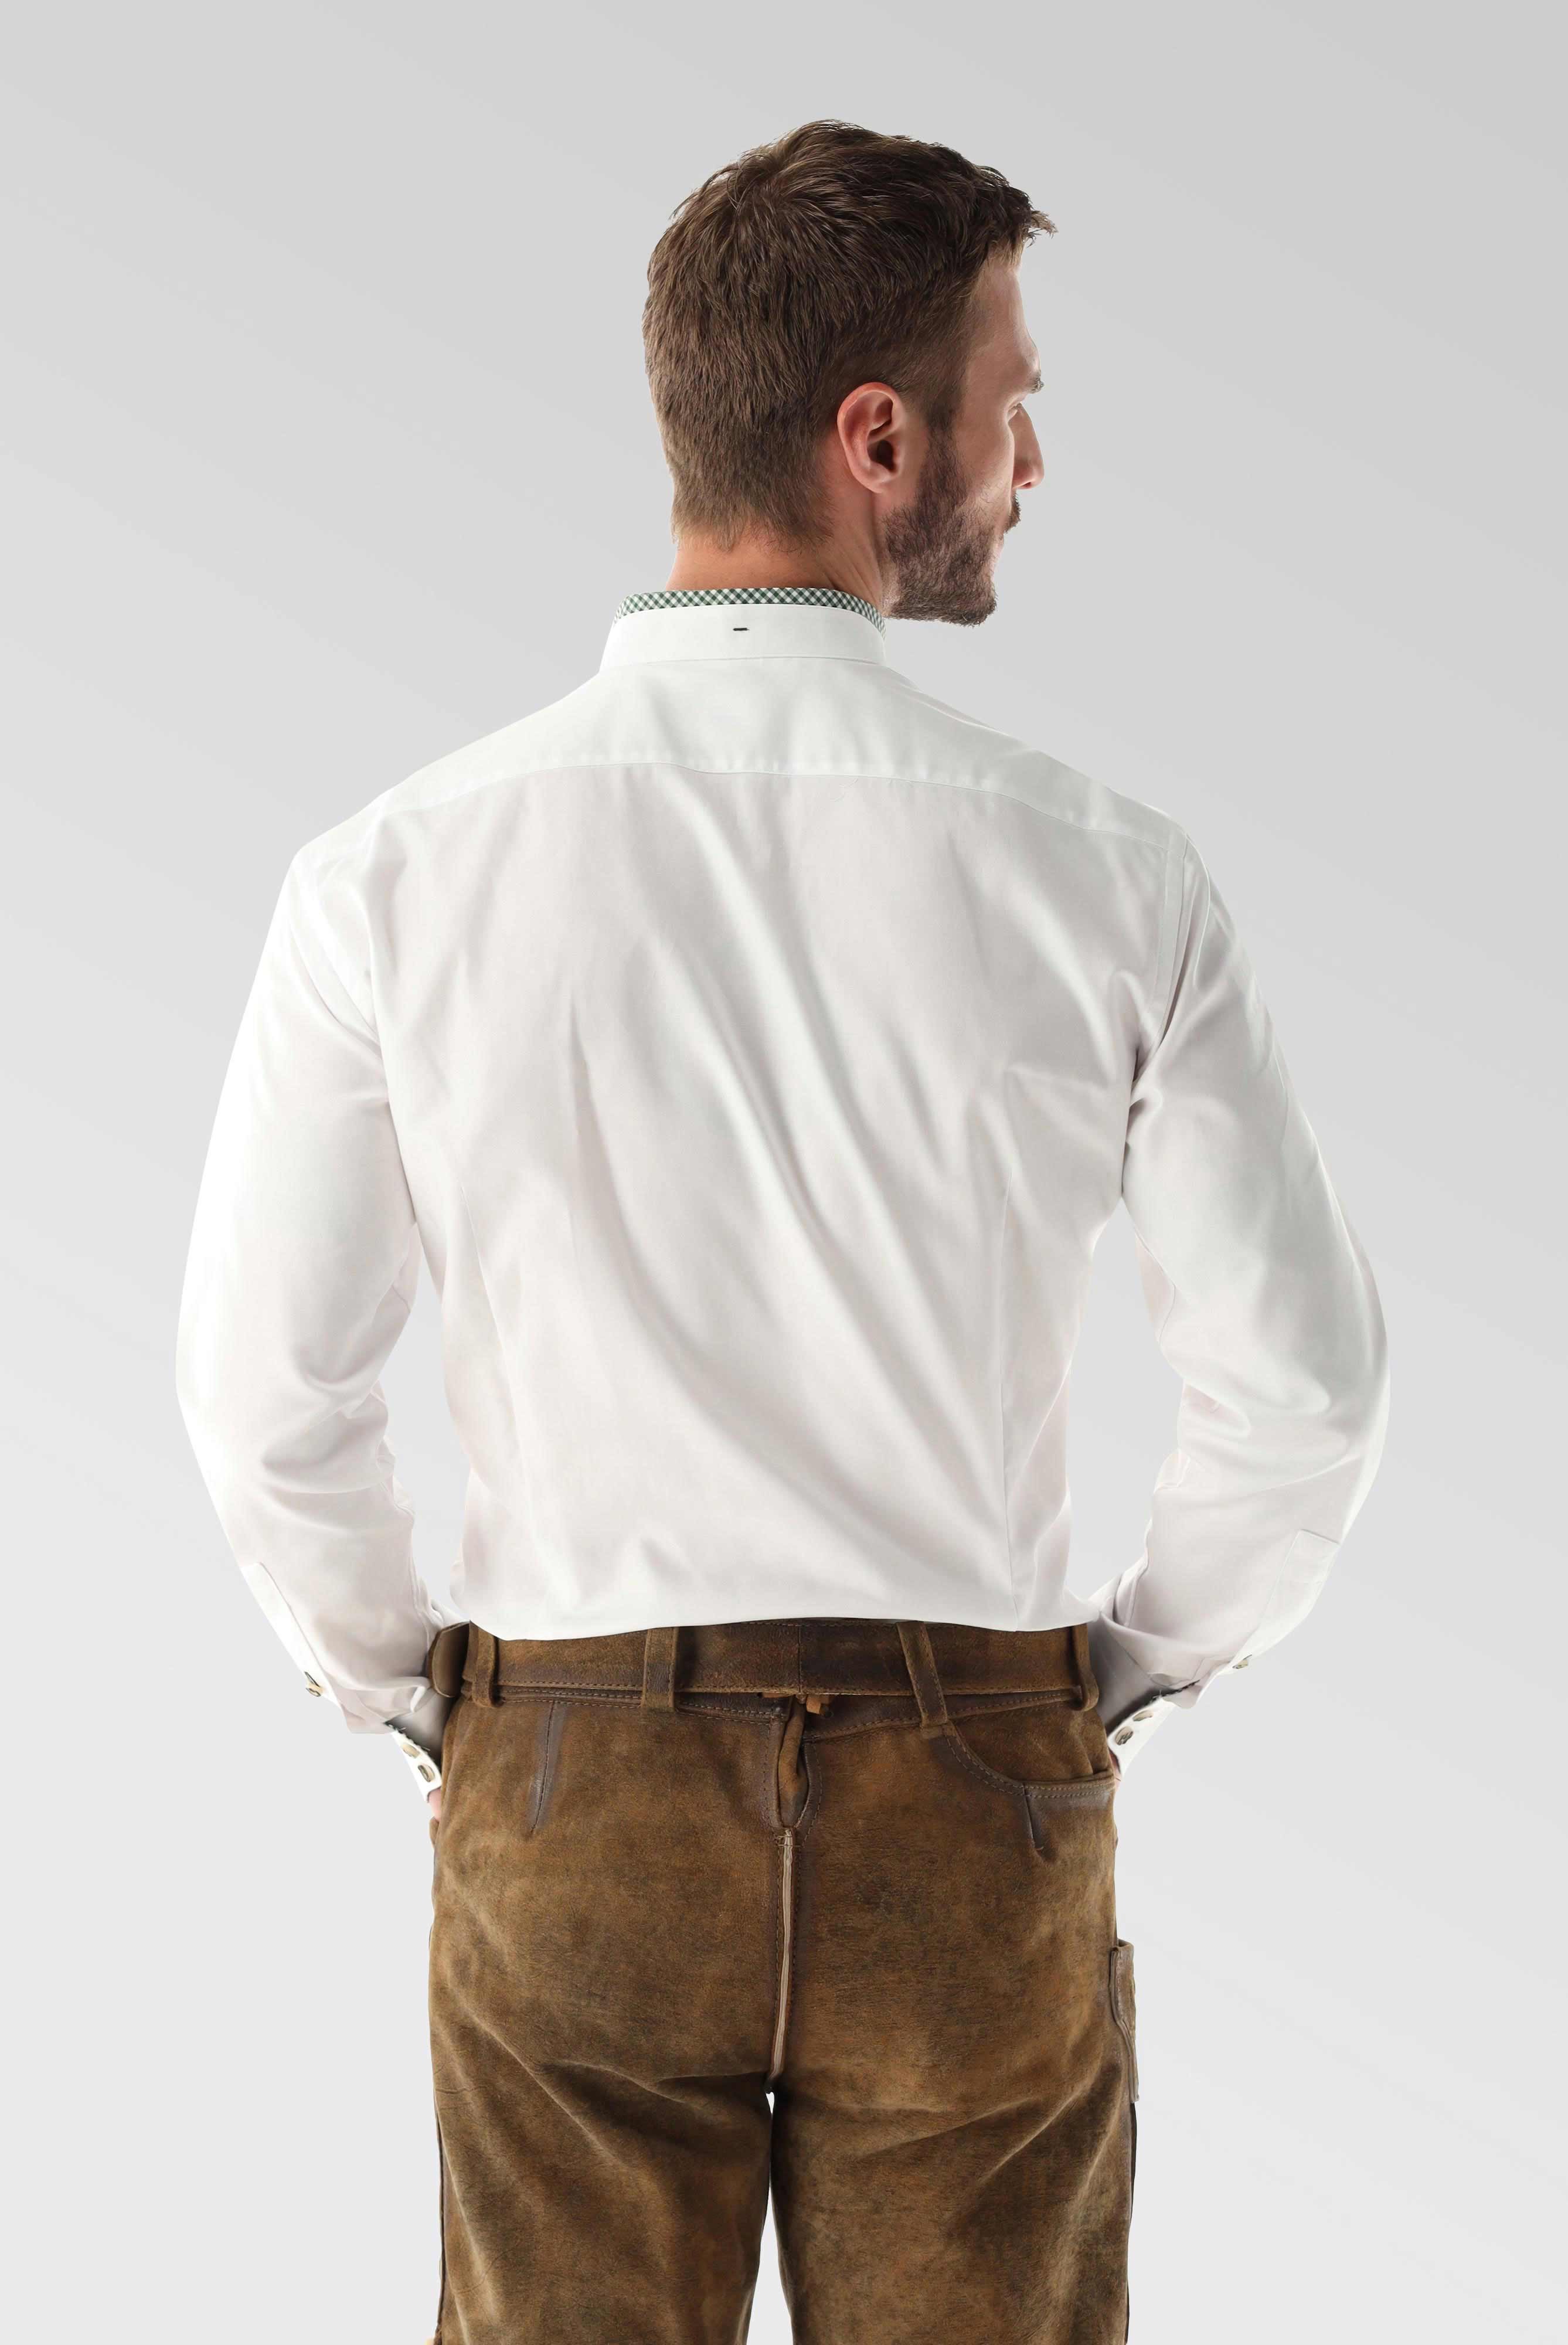 Festliche Hemden+Oxford Trachtenhemd mit Farbdetail Tailor Fit+20.2081.8Q.150251.009.38